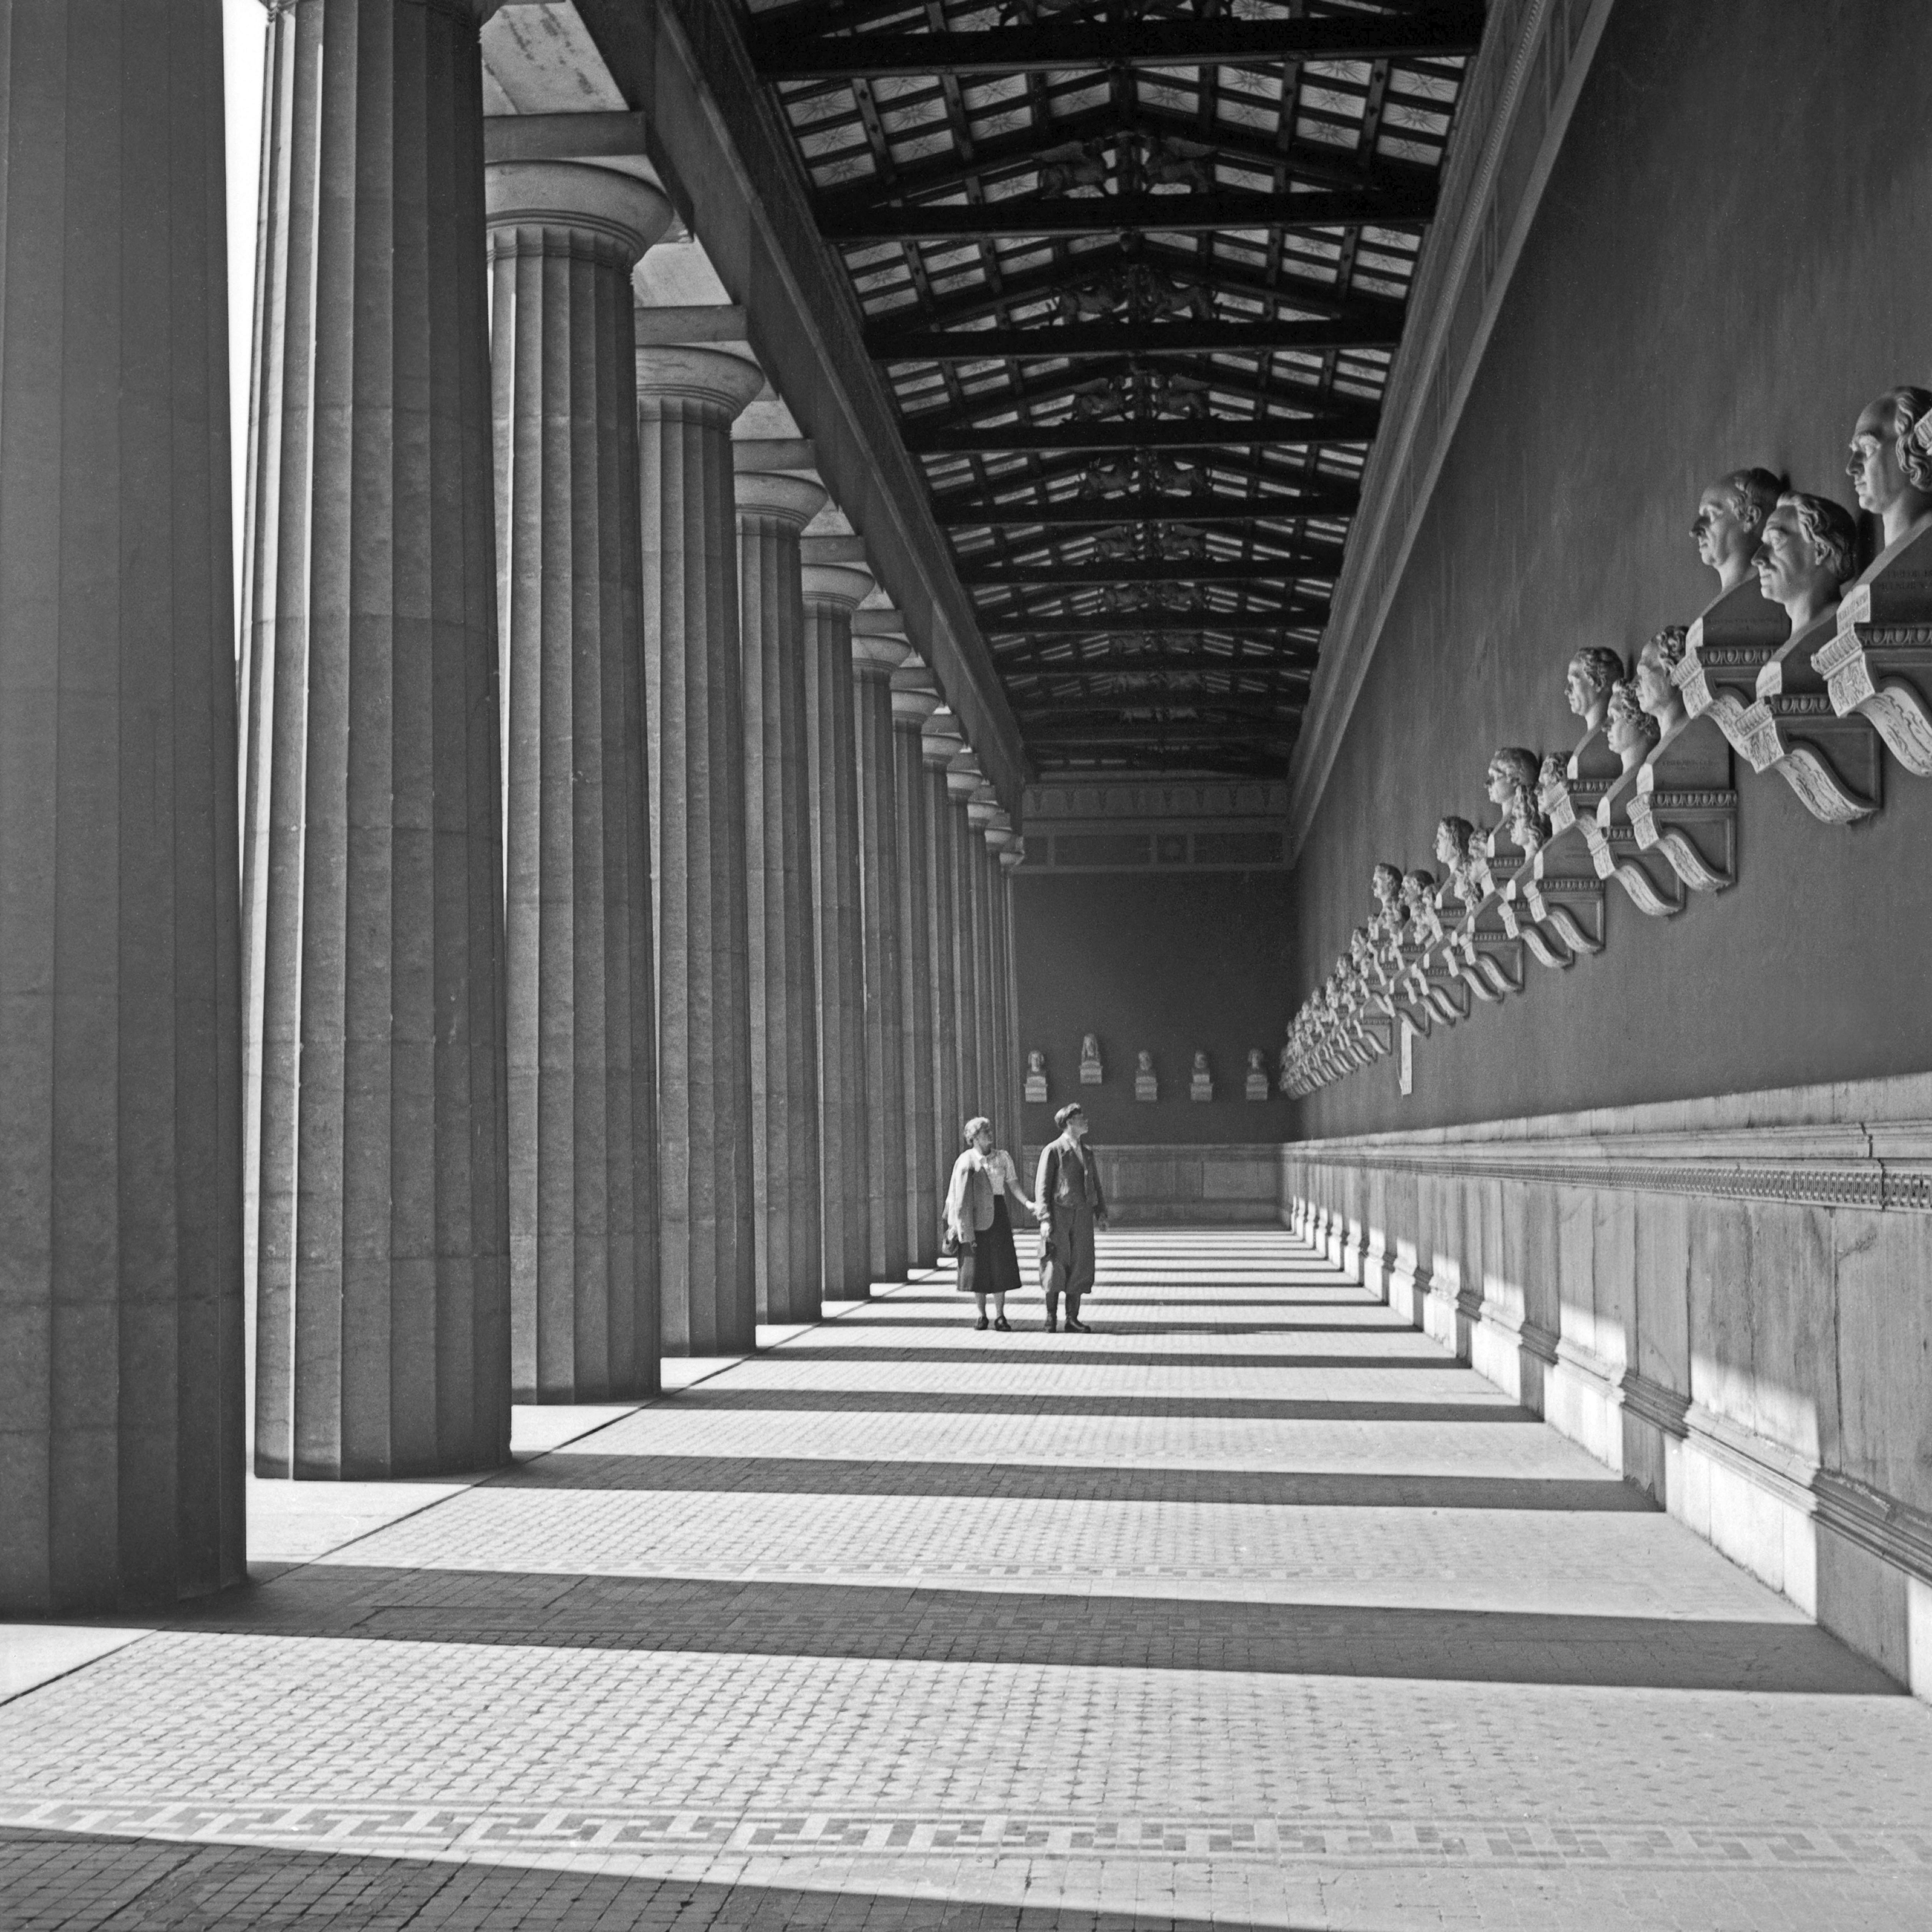 Karl Heinrich Lämmel Black and White Photograph – Hall of fame, Büsten von Berühmtheiten, München, Deutschland 1937, später gedruckt